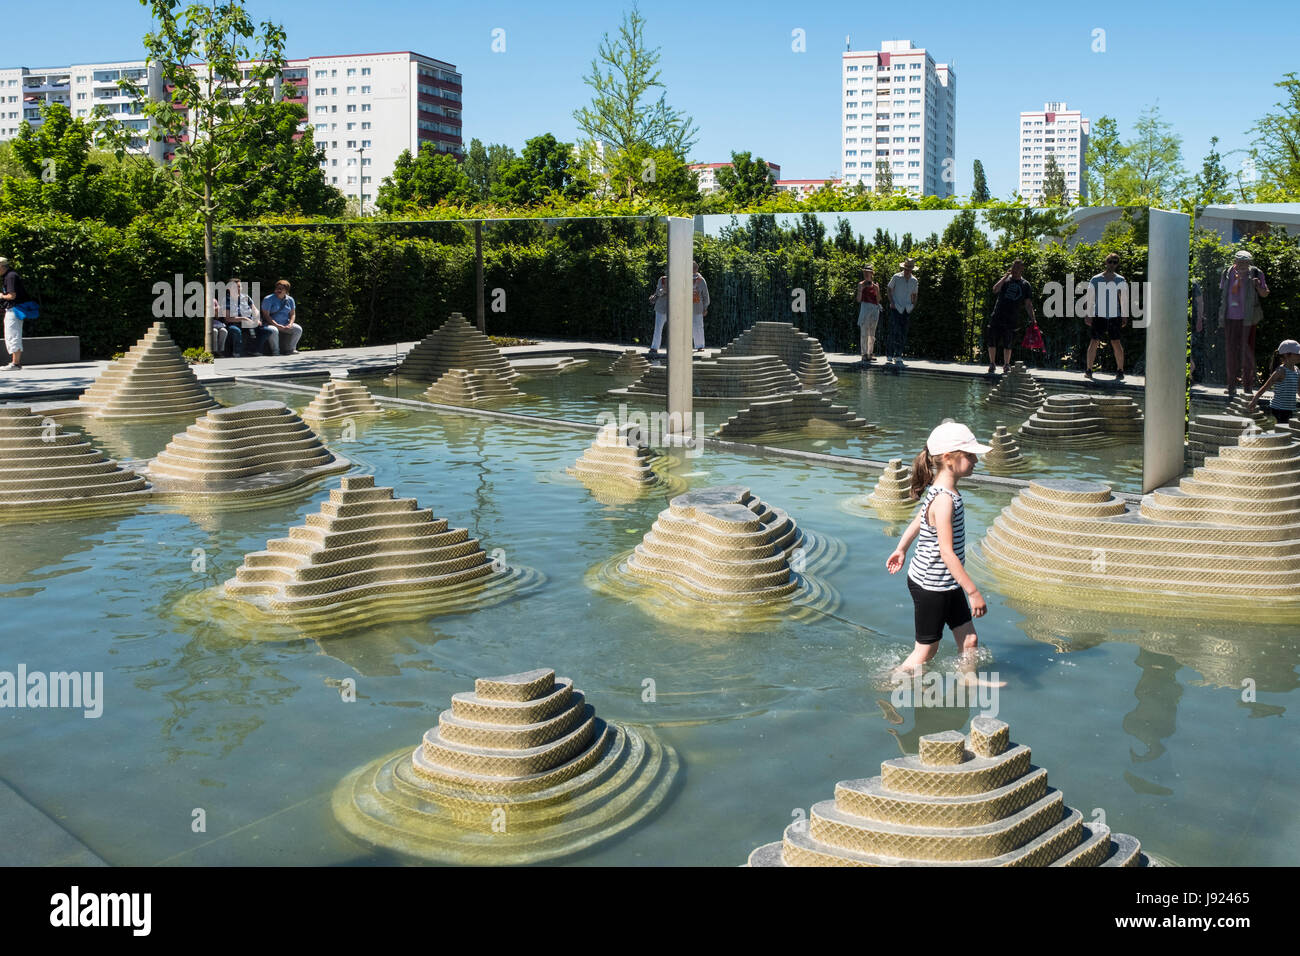 Garten des Geistes an IGA 2017 internationales Gartenfestival (internationale Garten Ausstellung) in Berlin, Deutschland Stockfoto